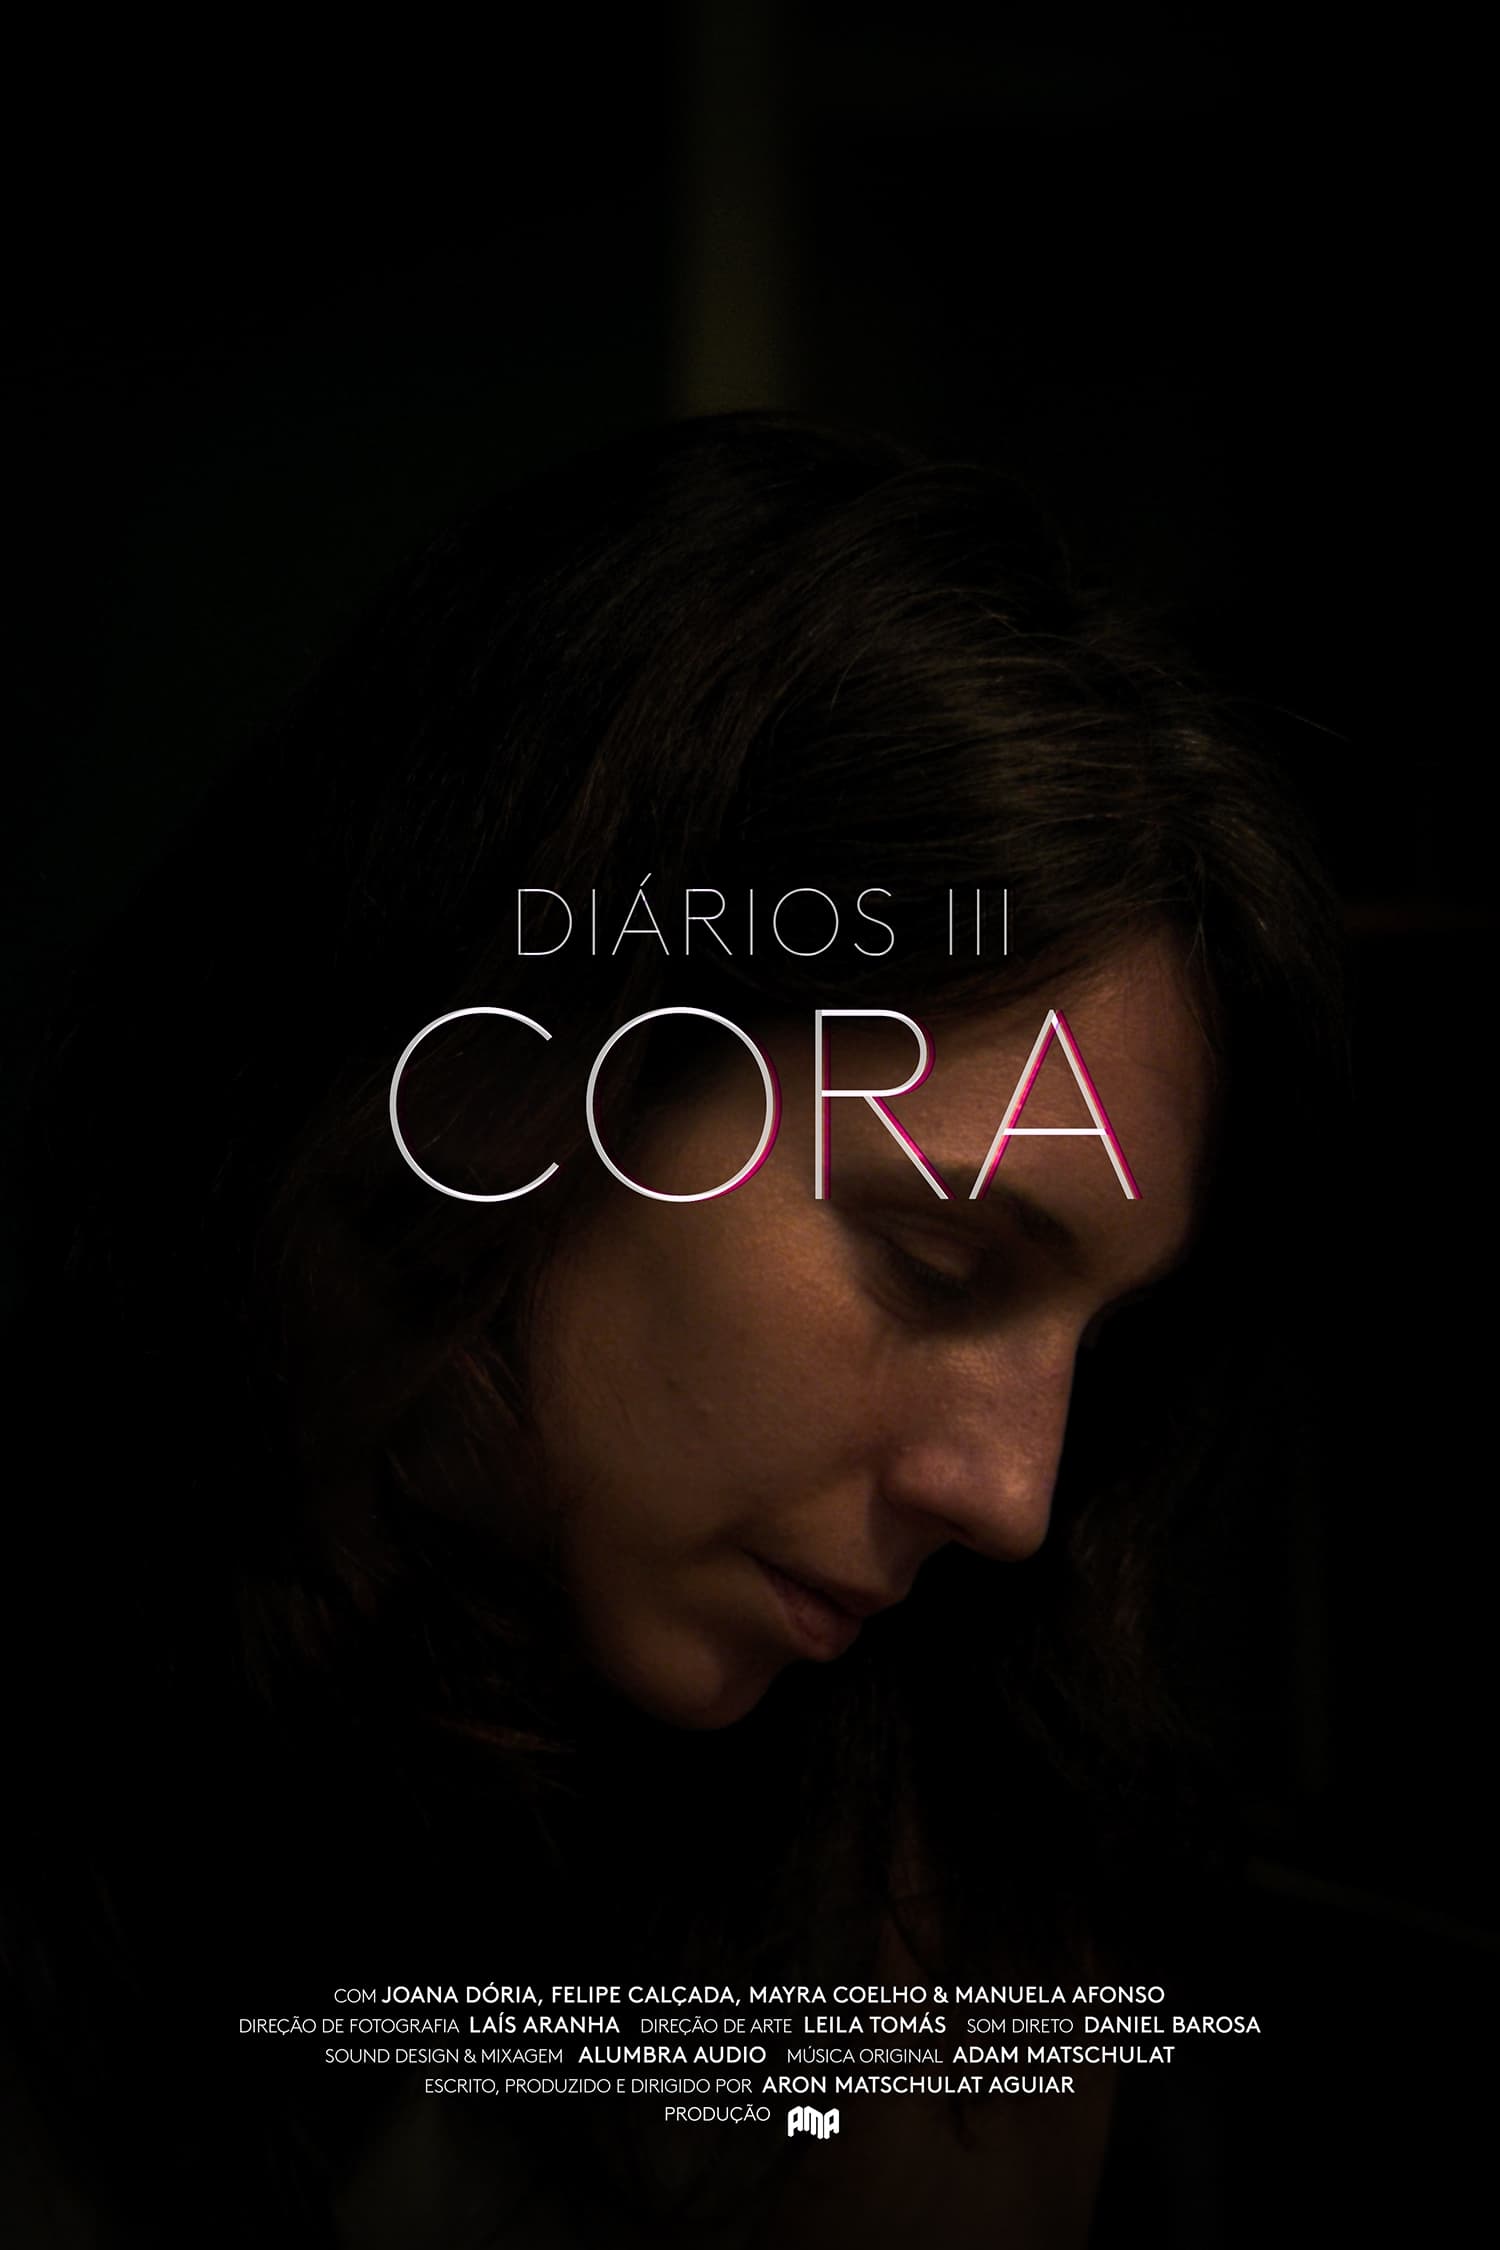 Diaries III - Cora